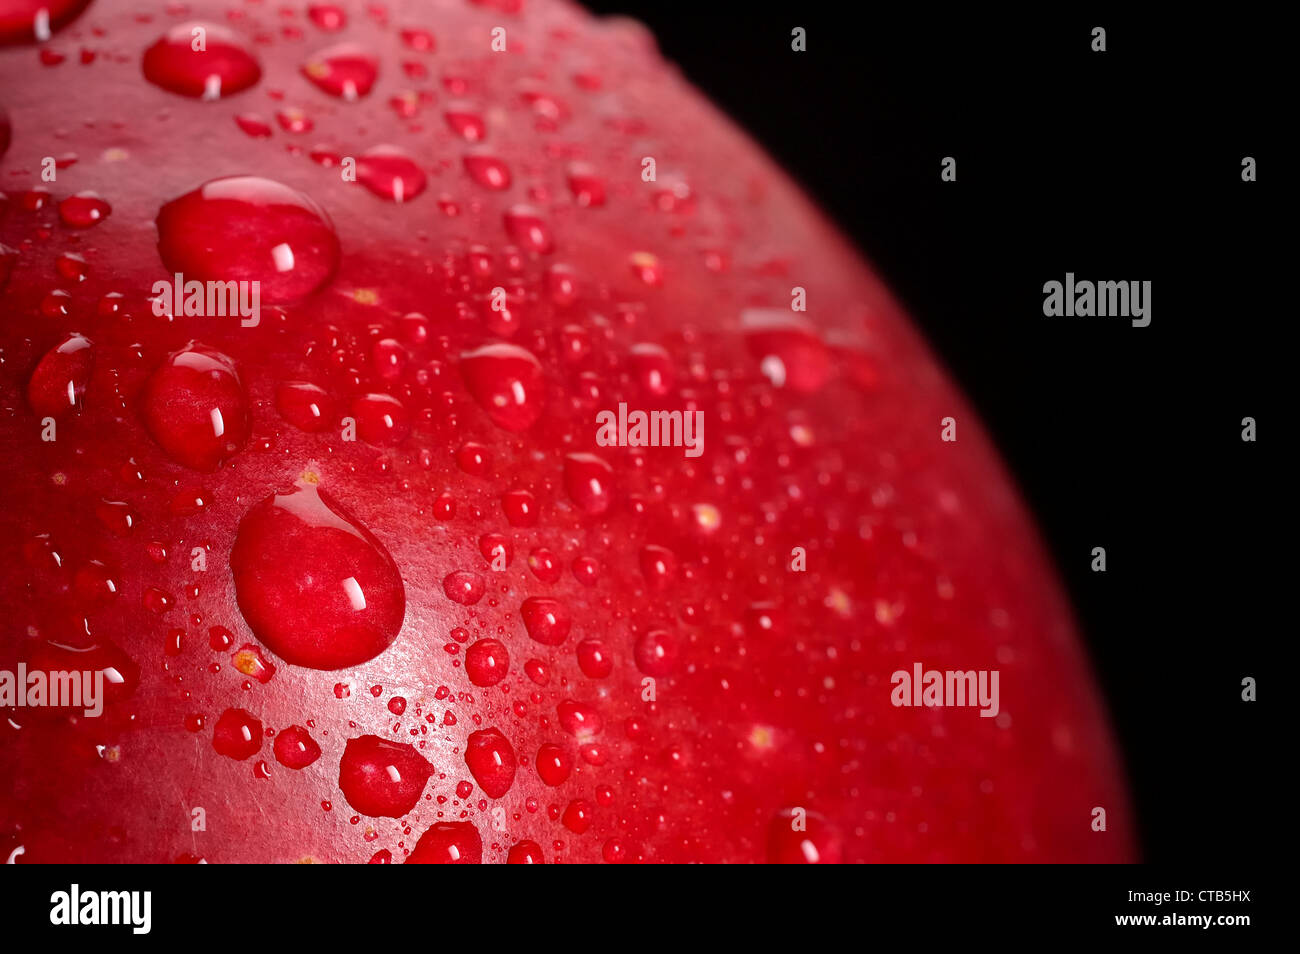 Close-up of red apple avec de l'eau gouttes ; fond noir Banque D'Images